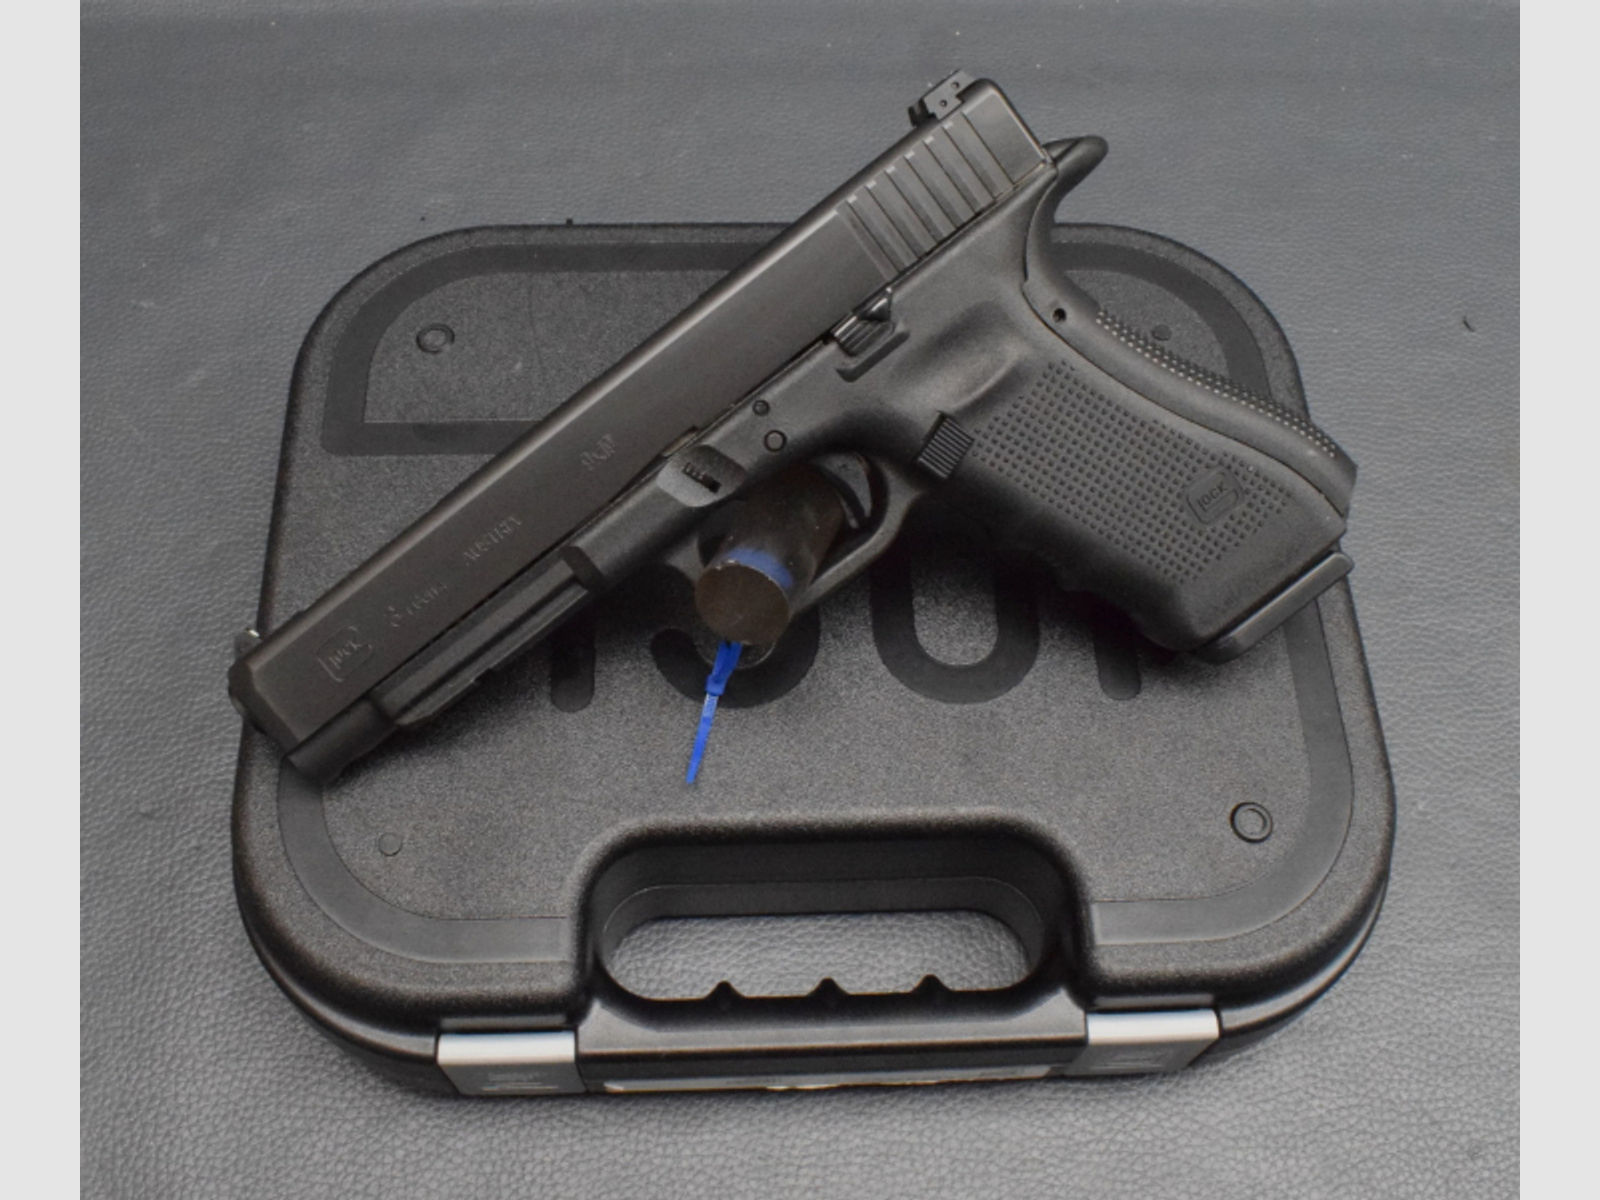 Glock Modell 34 Gen.4, Kaliber 9x19, Neuware aus Geschäftsauflösung